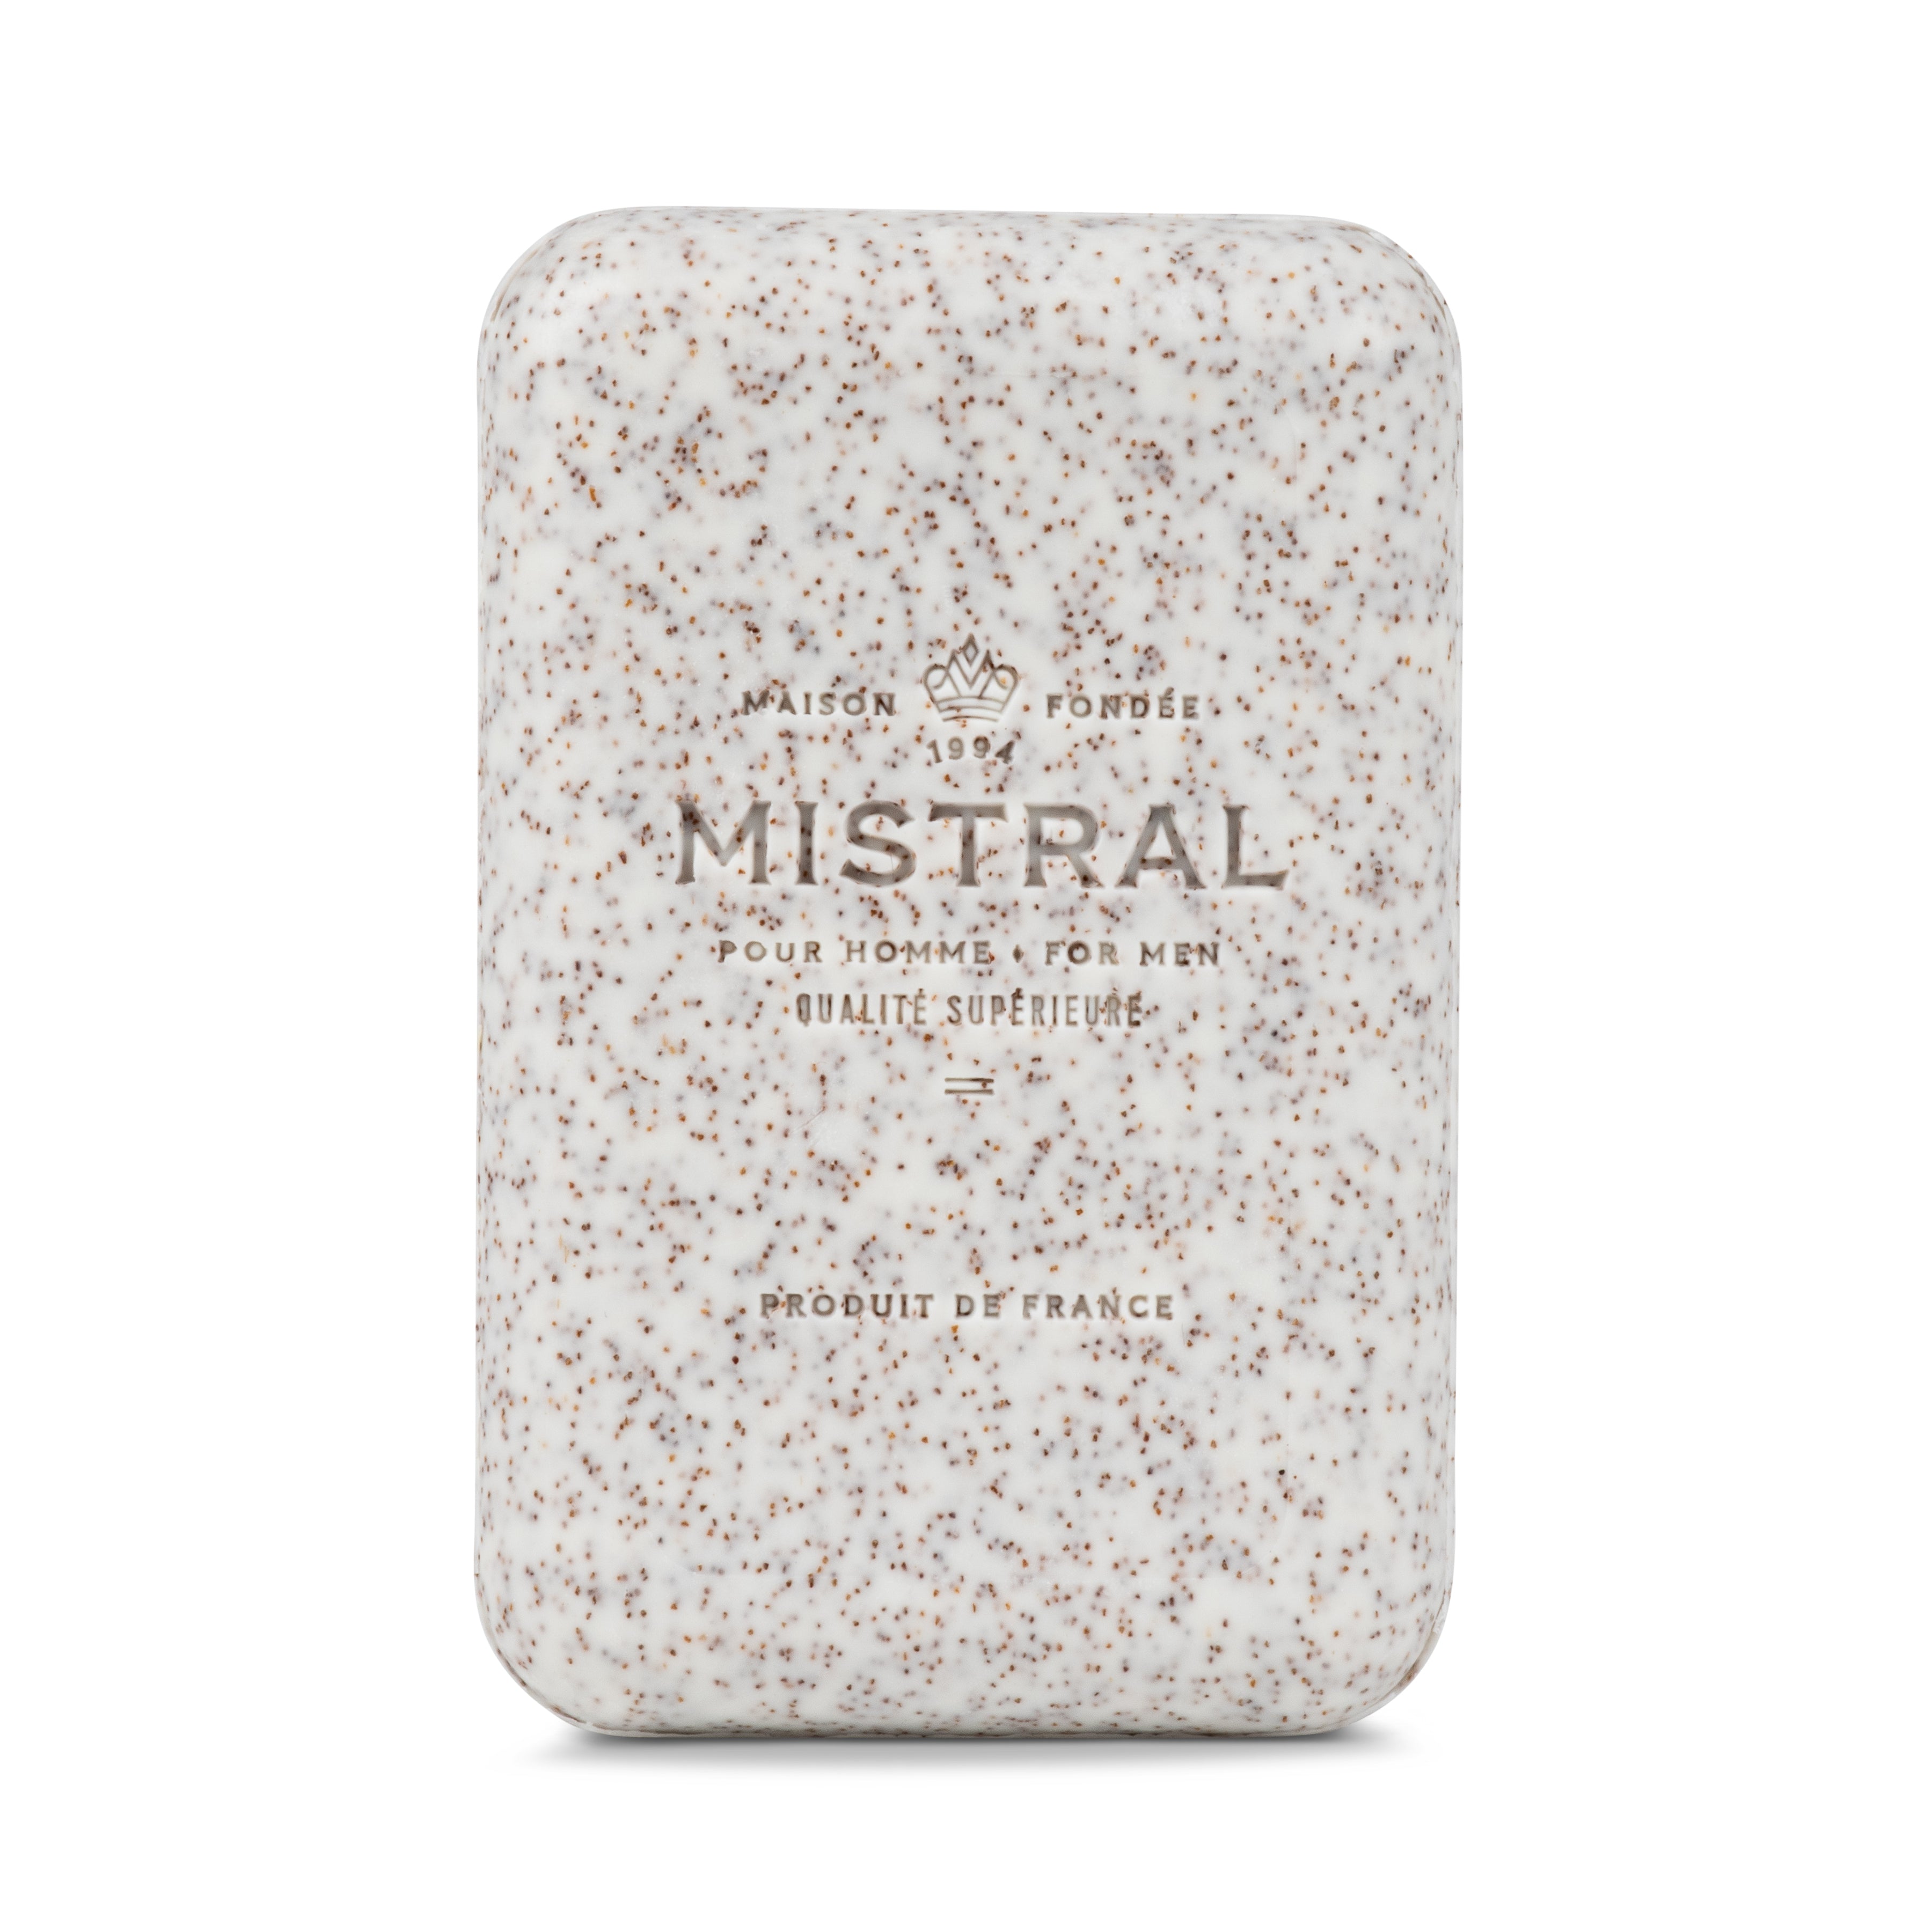 Exfoliator Natural Men's Soap, Exfoliating Soap Bar – Patriot Mens Company